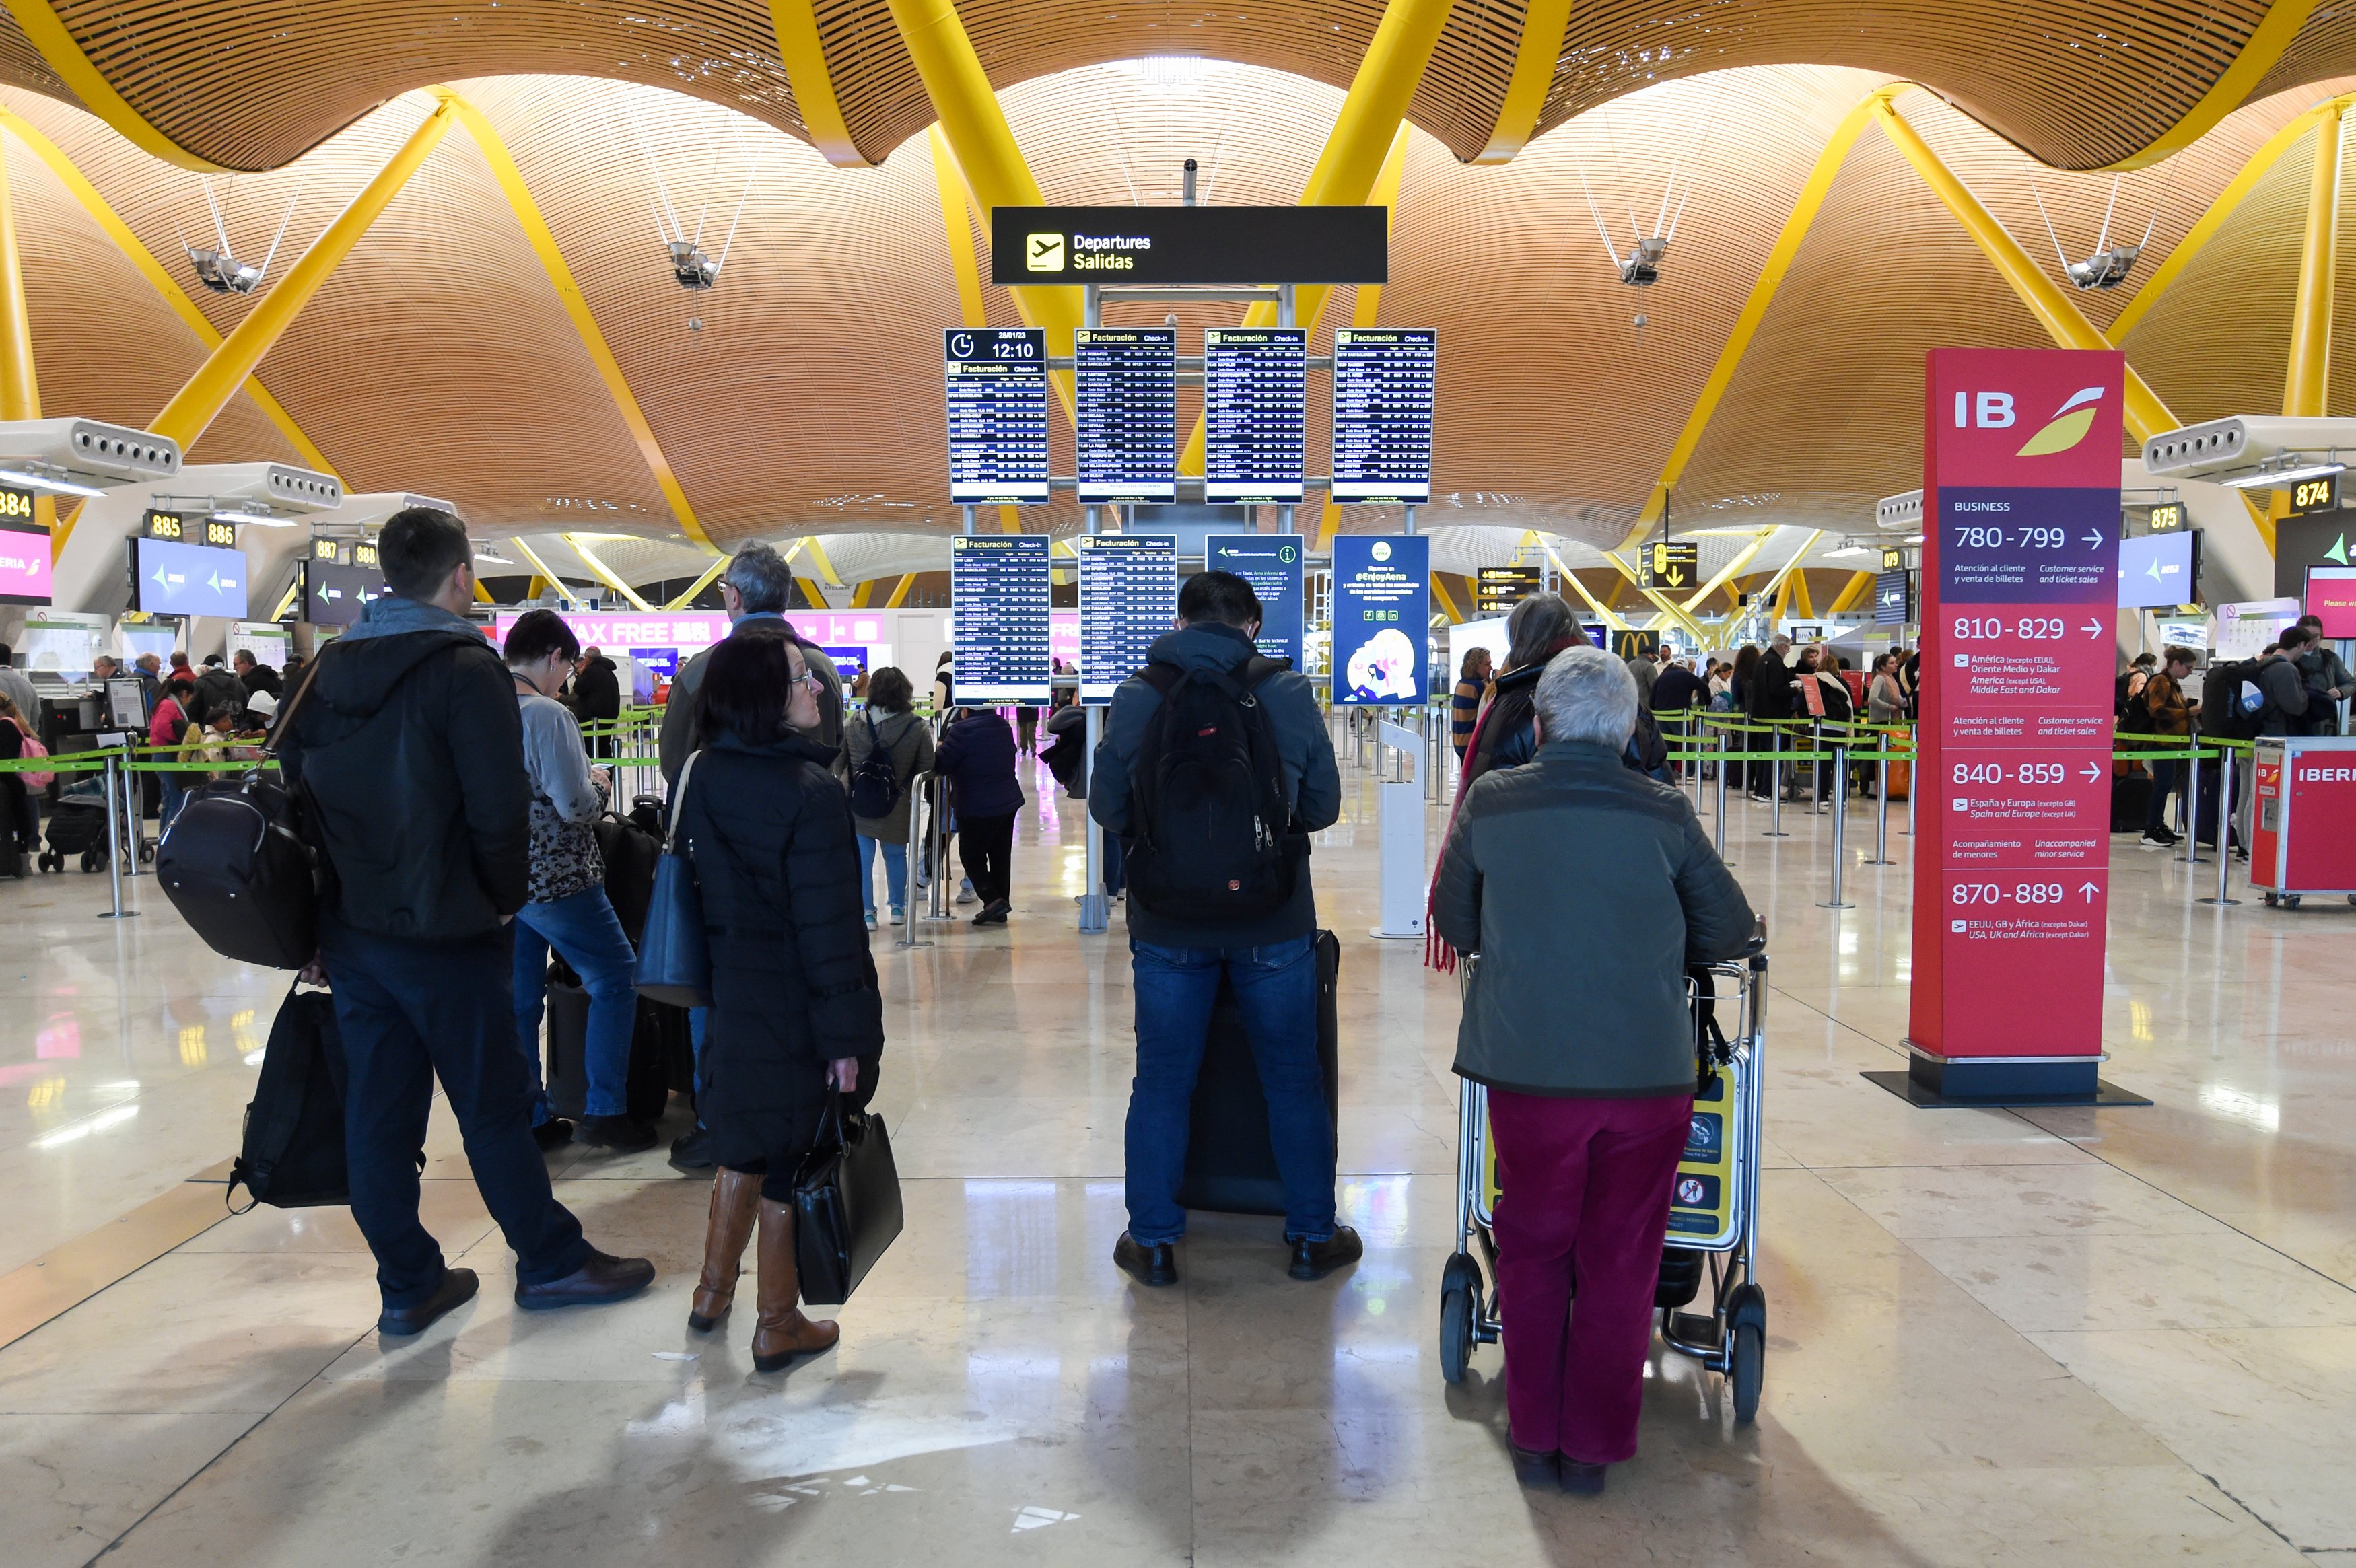 Diverses persones esperen embarcar en la terminal de l'aeroport